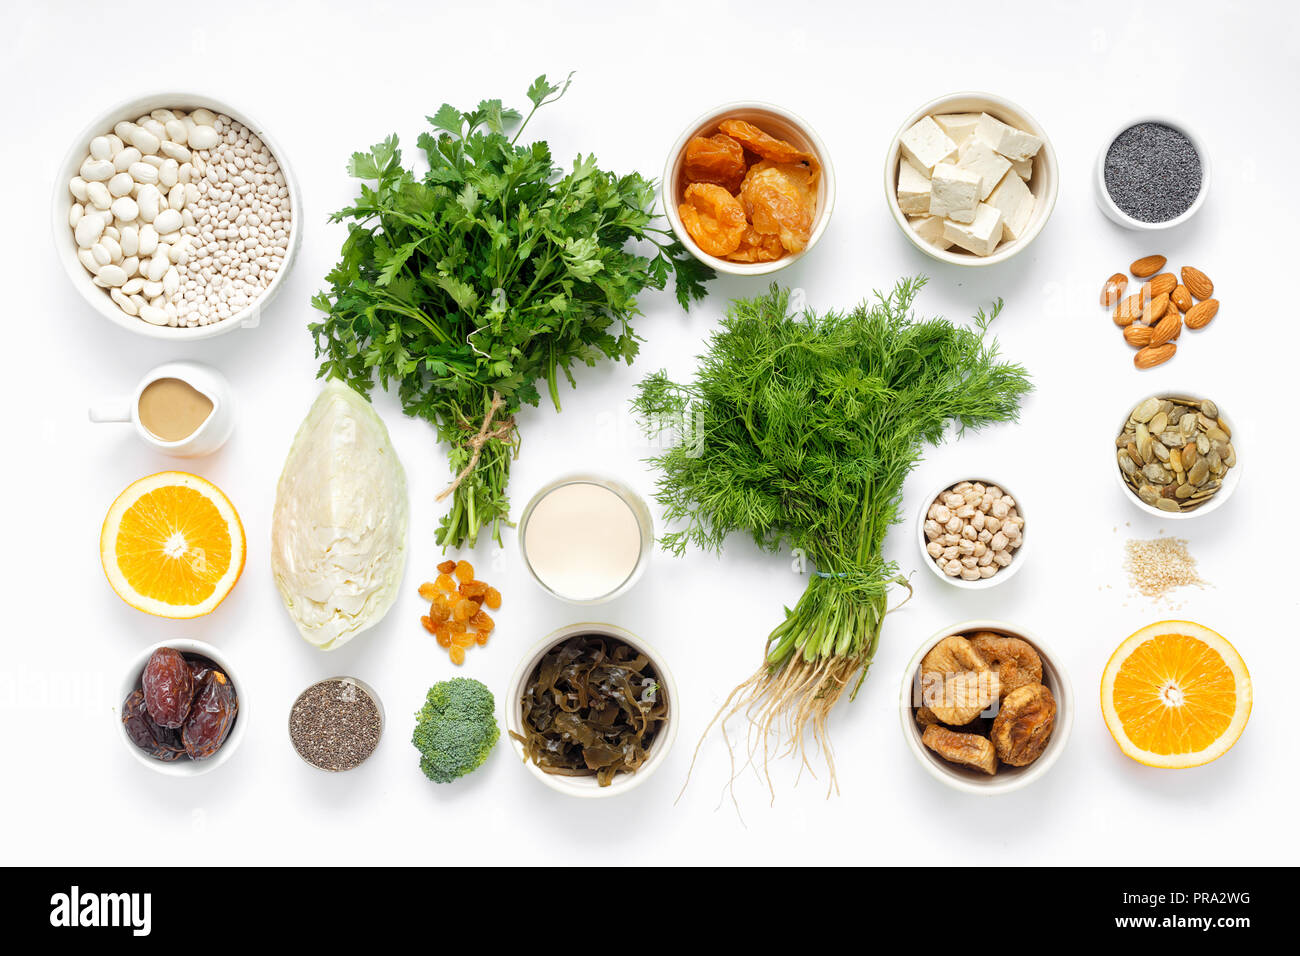 Quelle für Kalzium für Vegetarier. Gesunde Lebensmittel sauber Essen: Obst,  Gemüse, Samen, superfood, Blattgemüse auf weißem Hintergrund der Ansicht  von oben Stockfotografie - Alamy